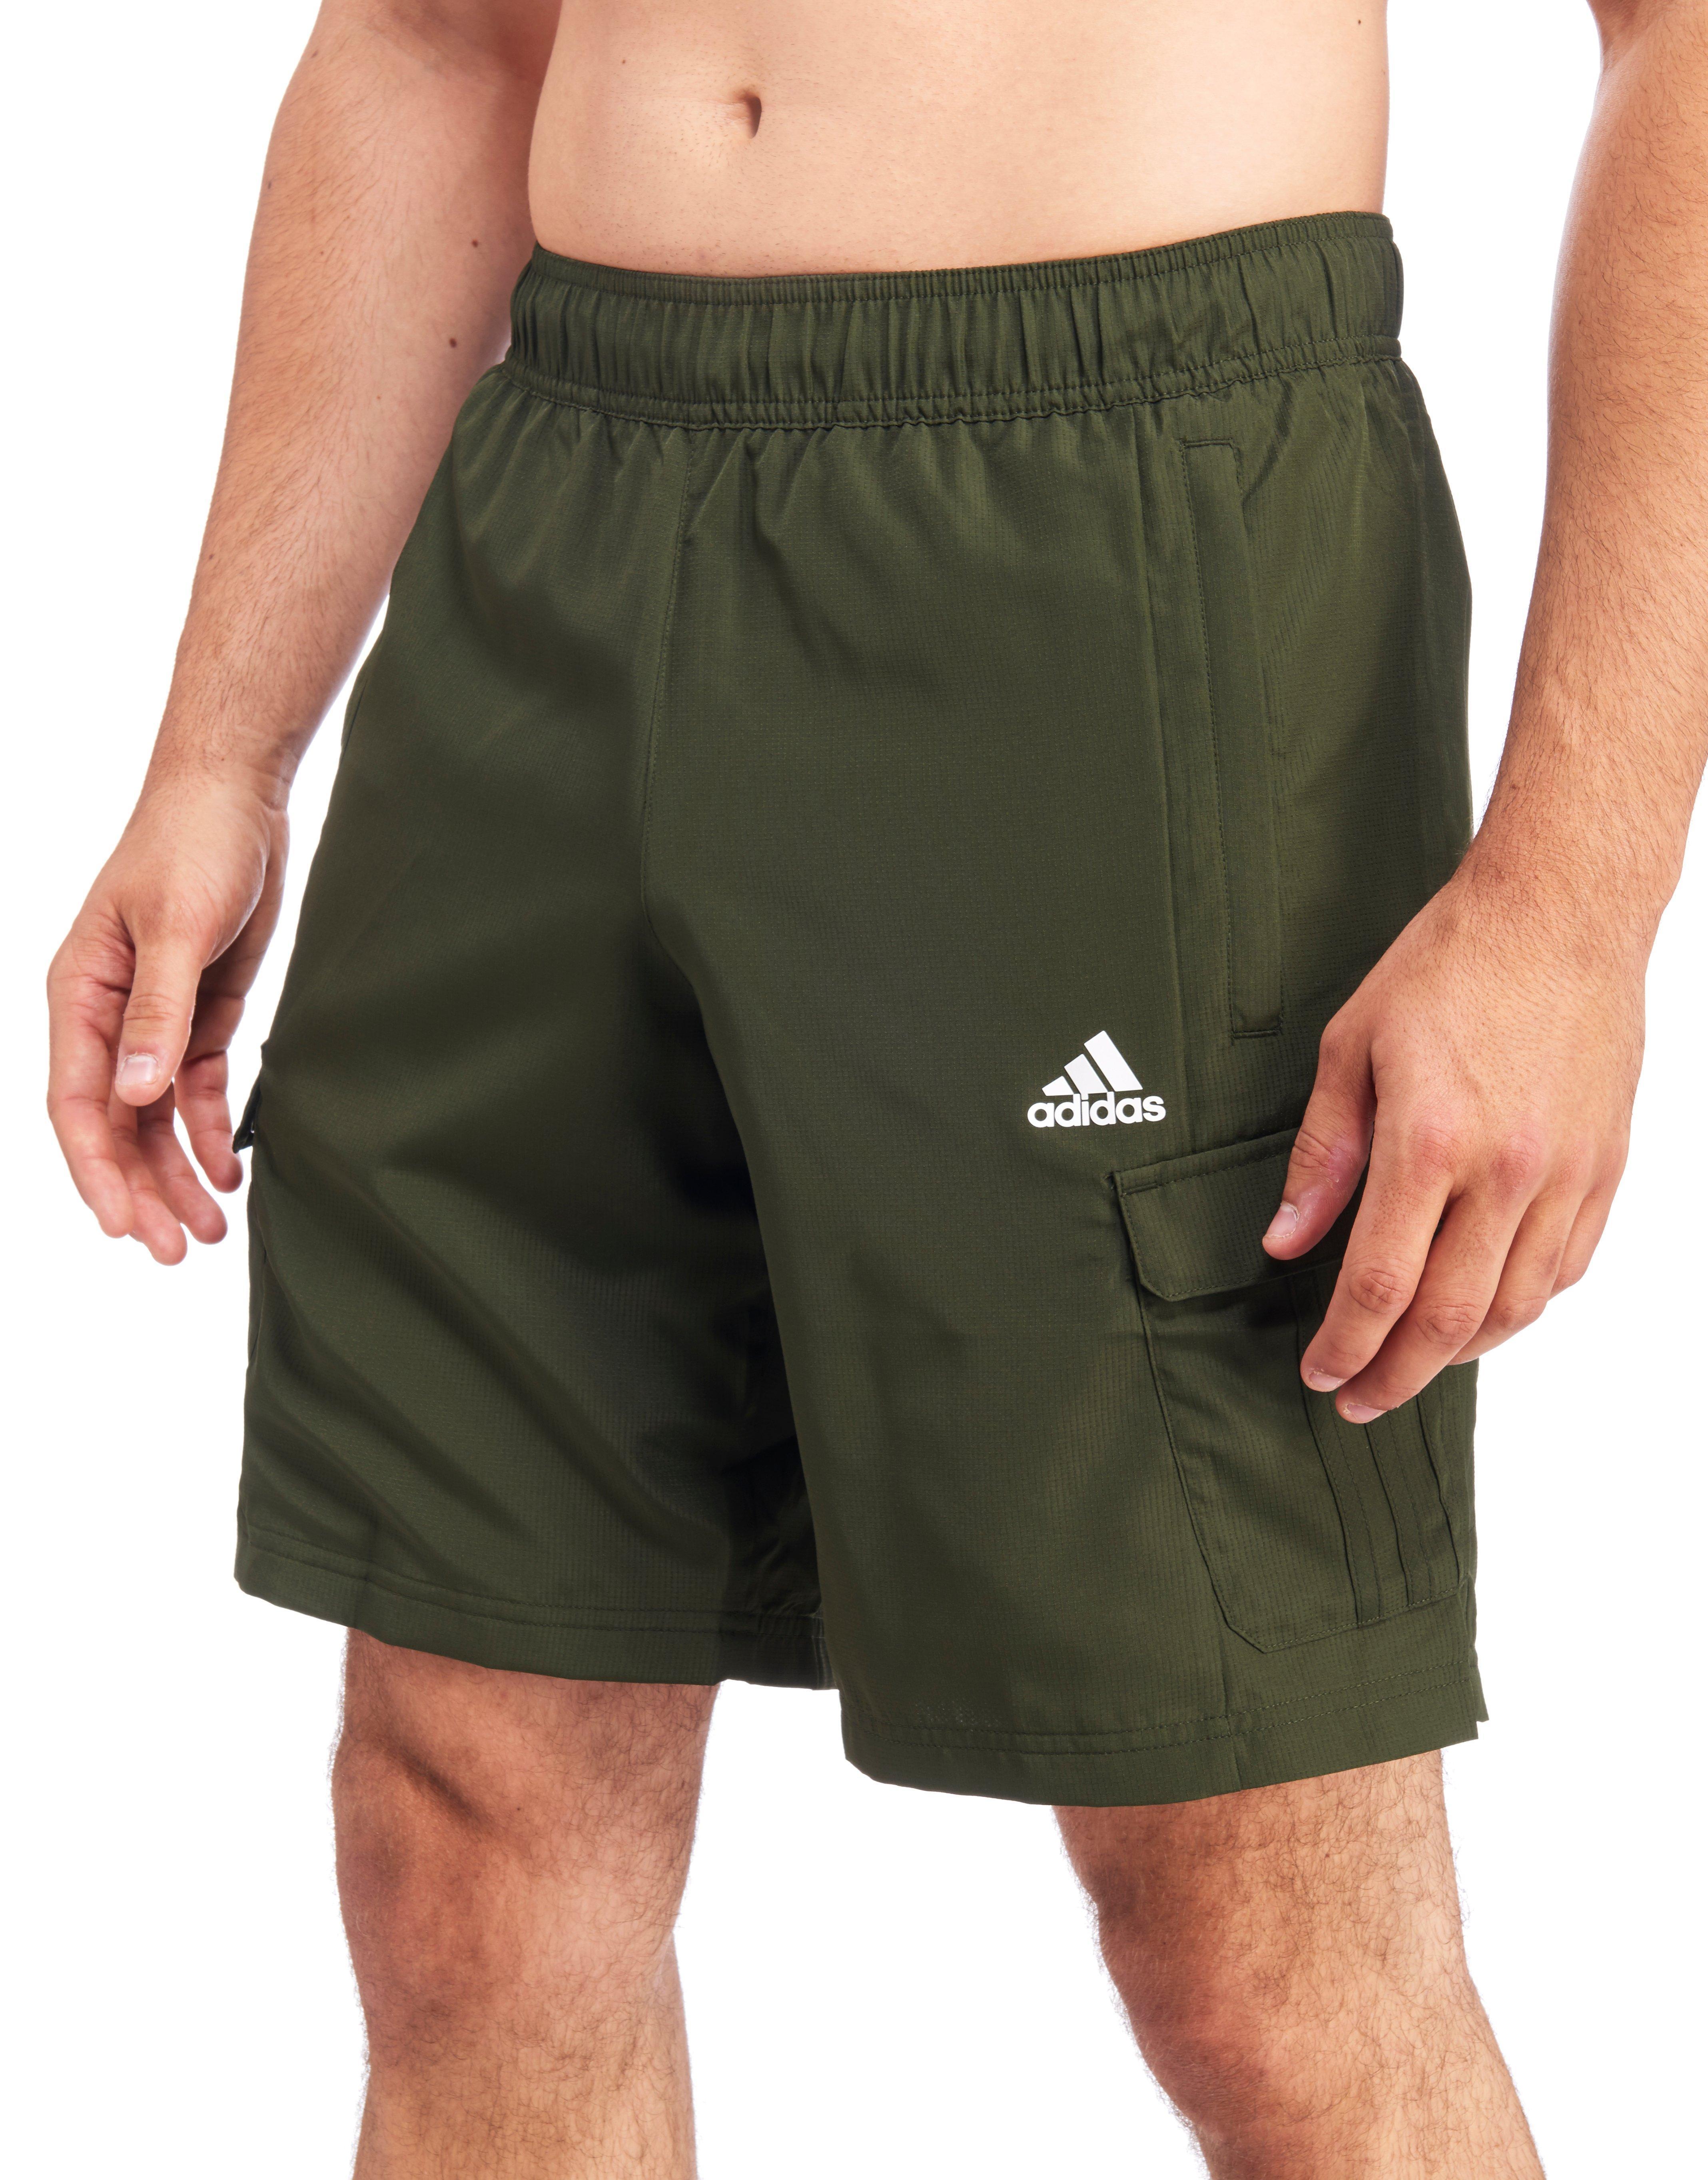 adidas cargo shorts green